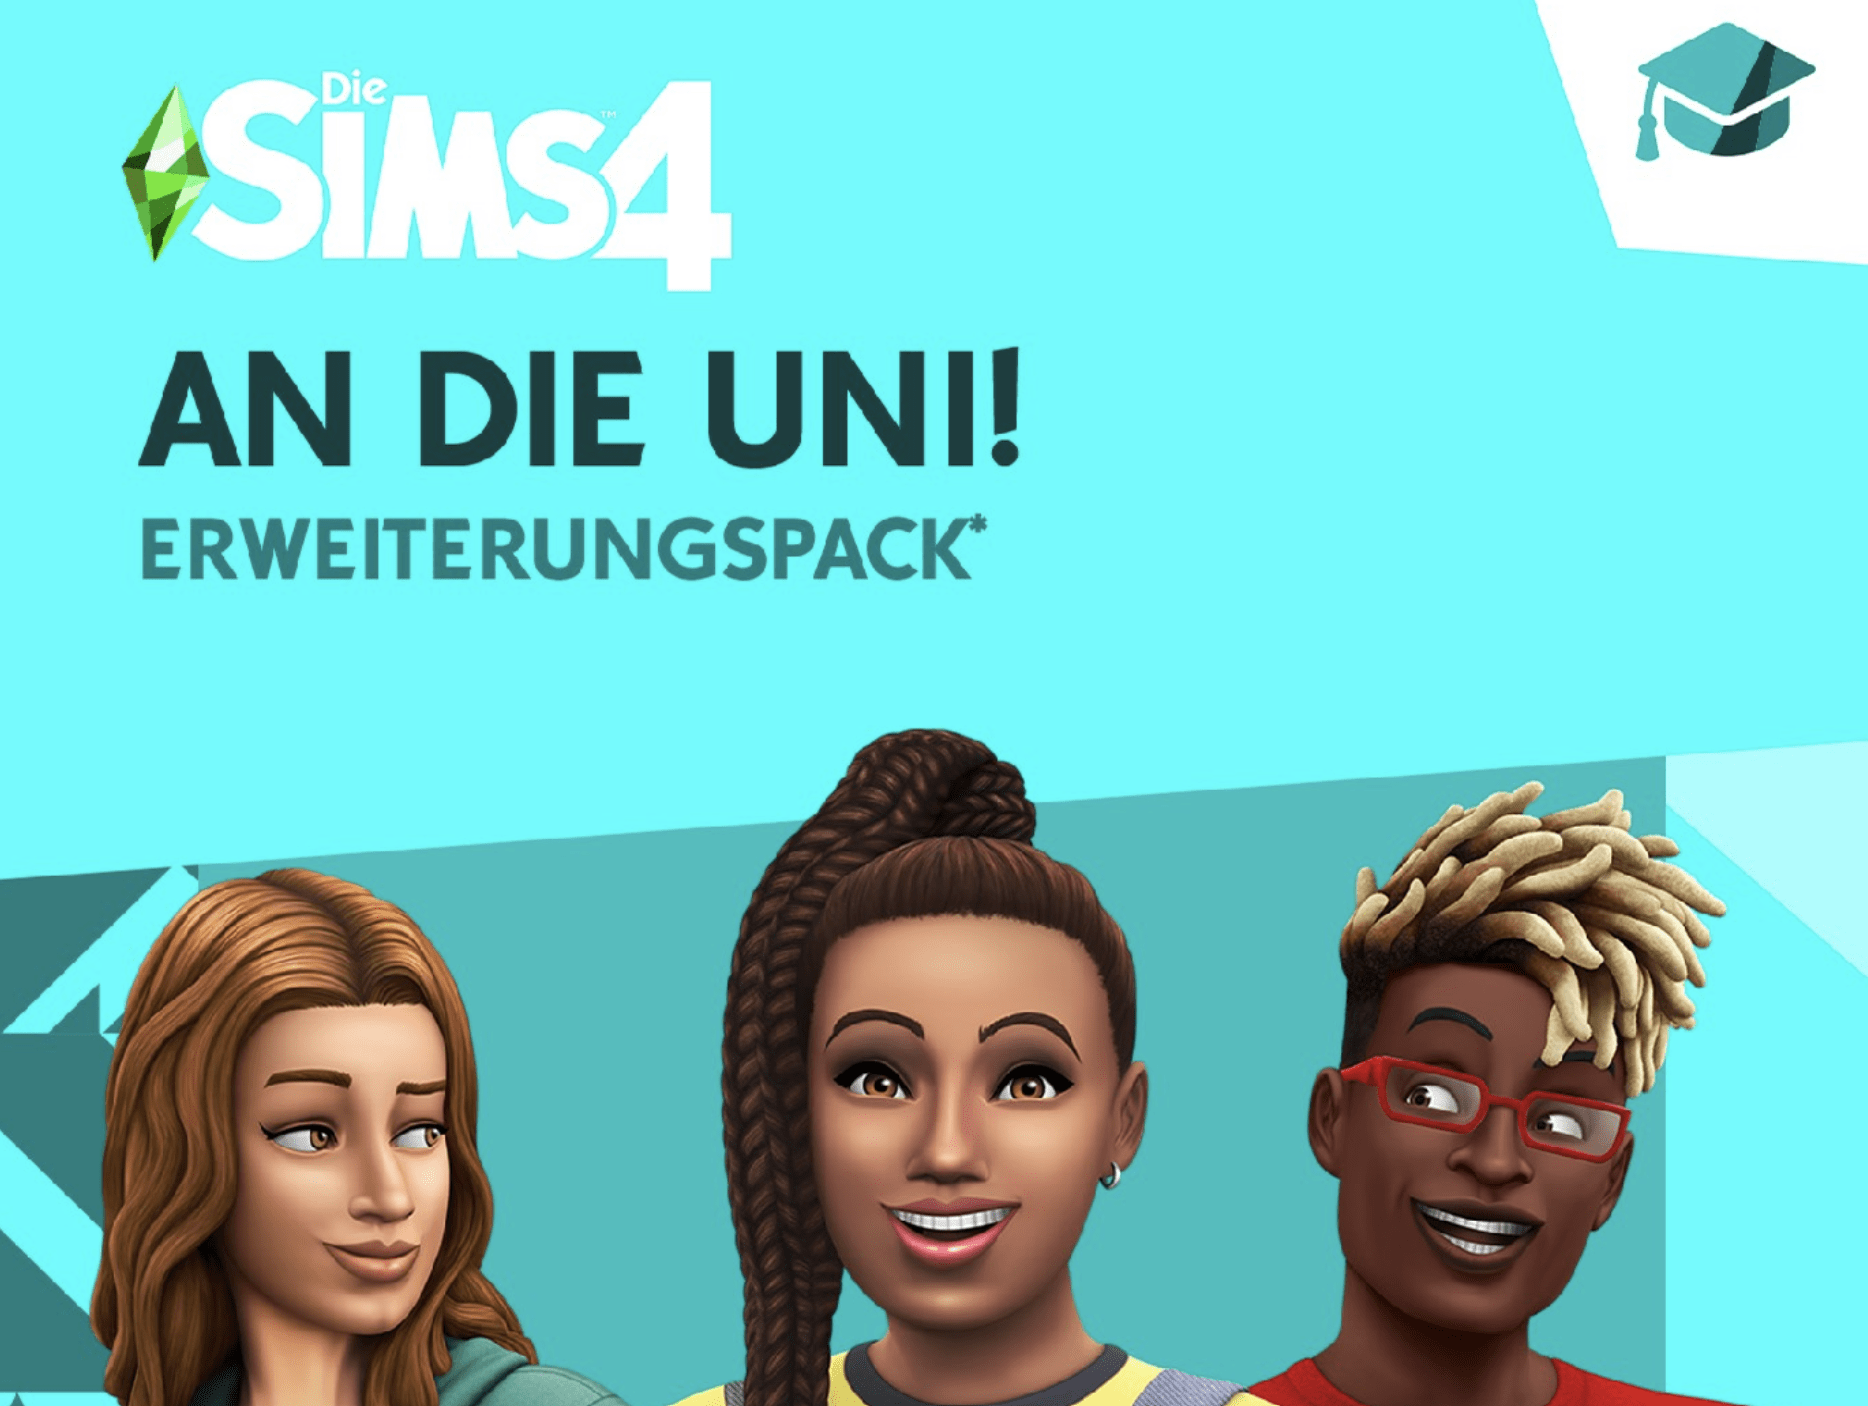 Die Sims 4: An die Uni